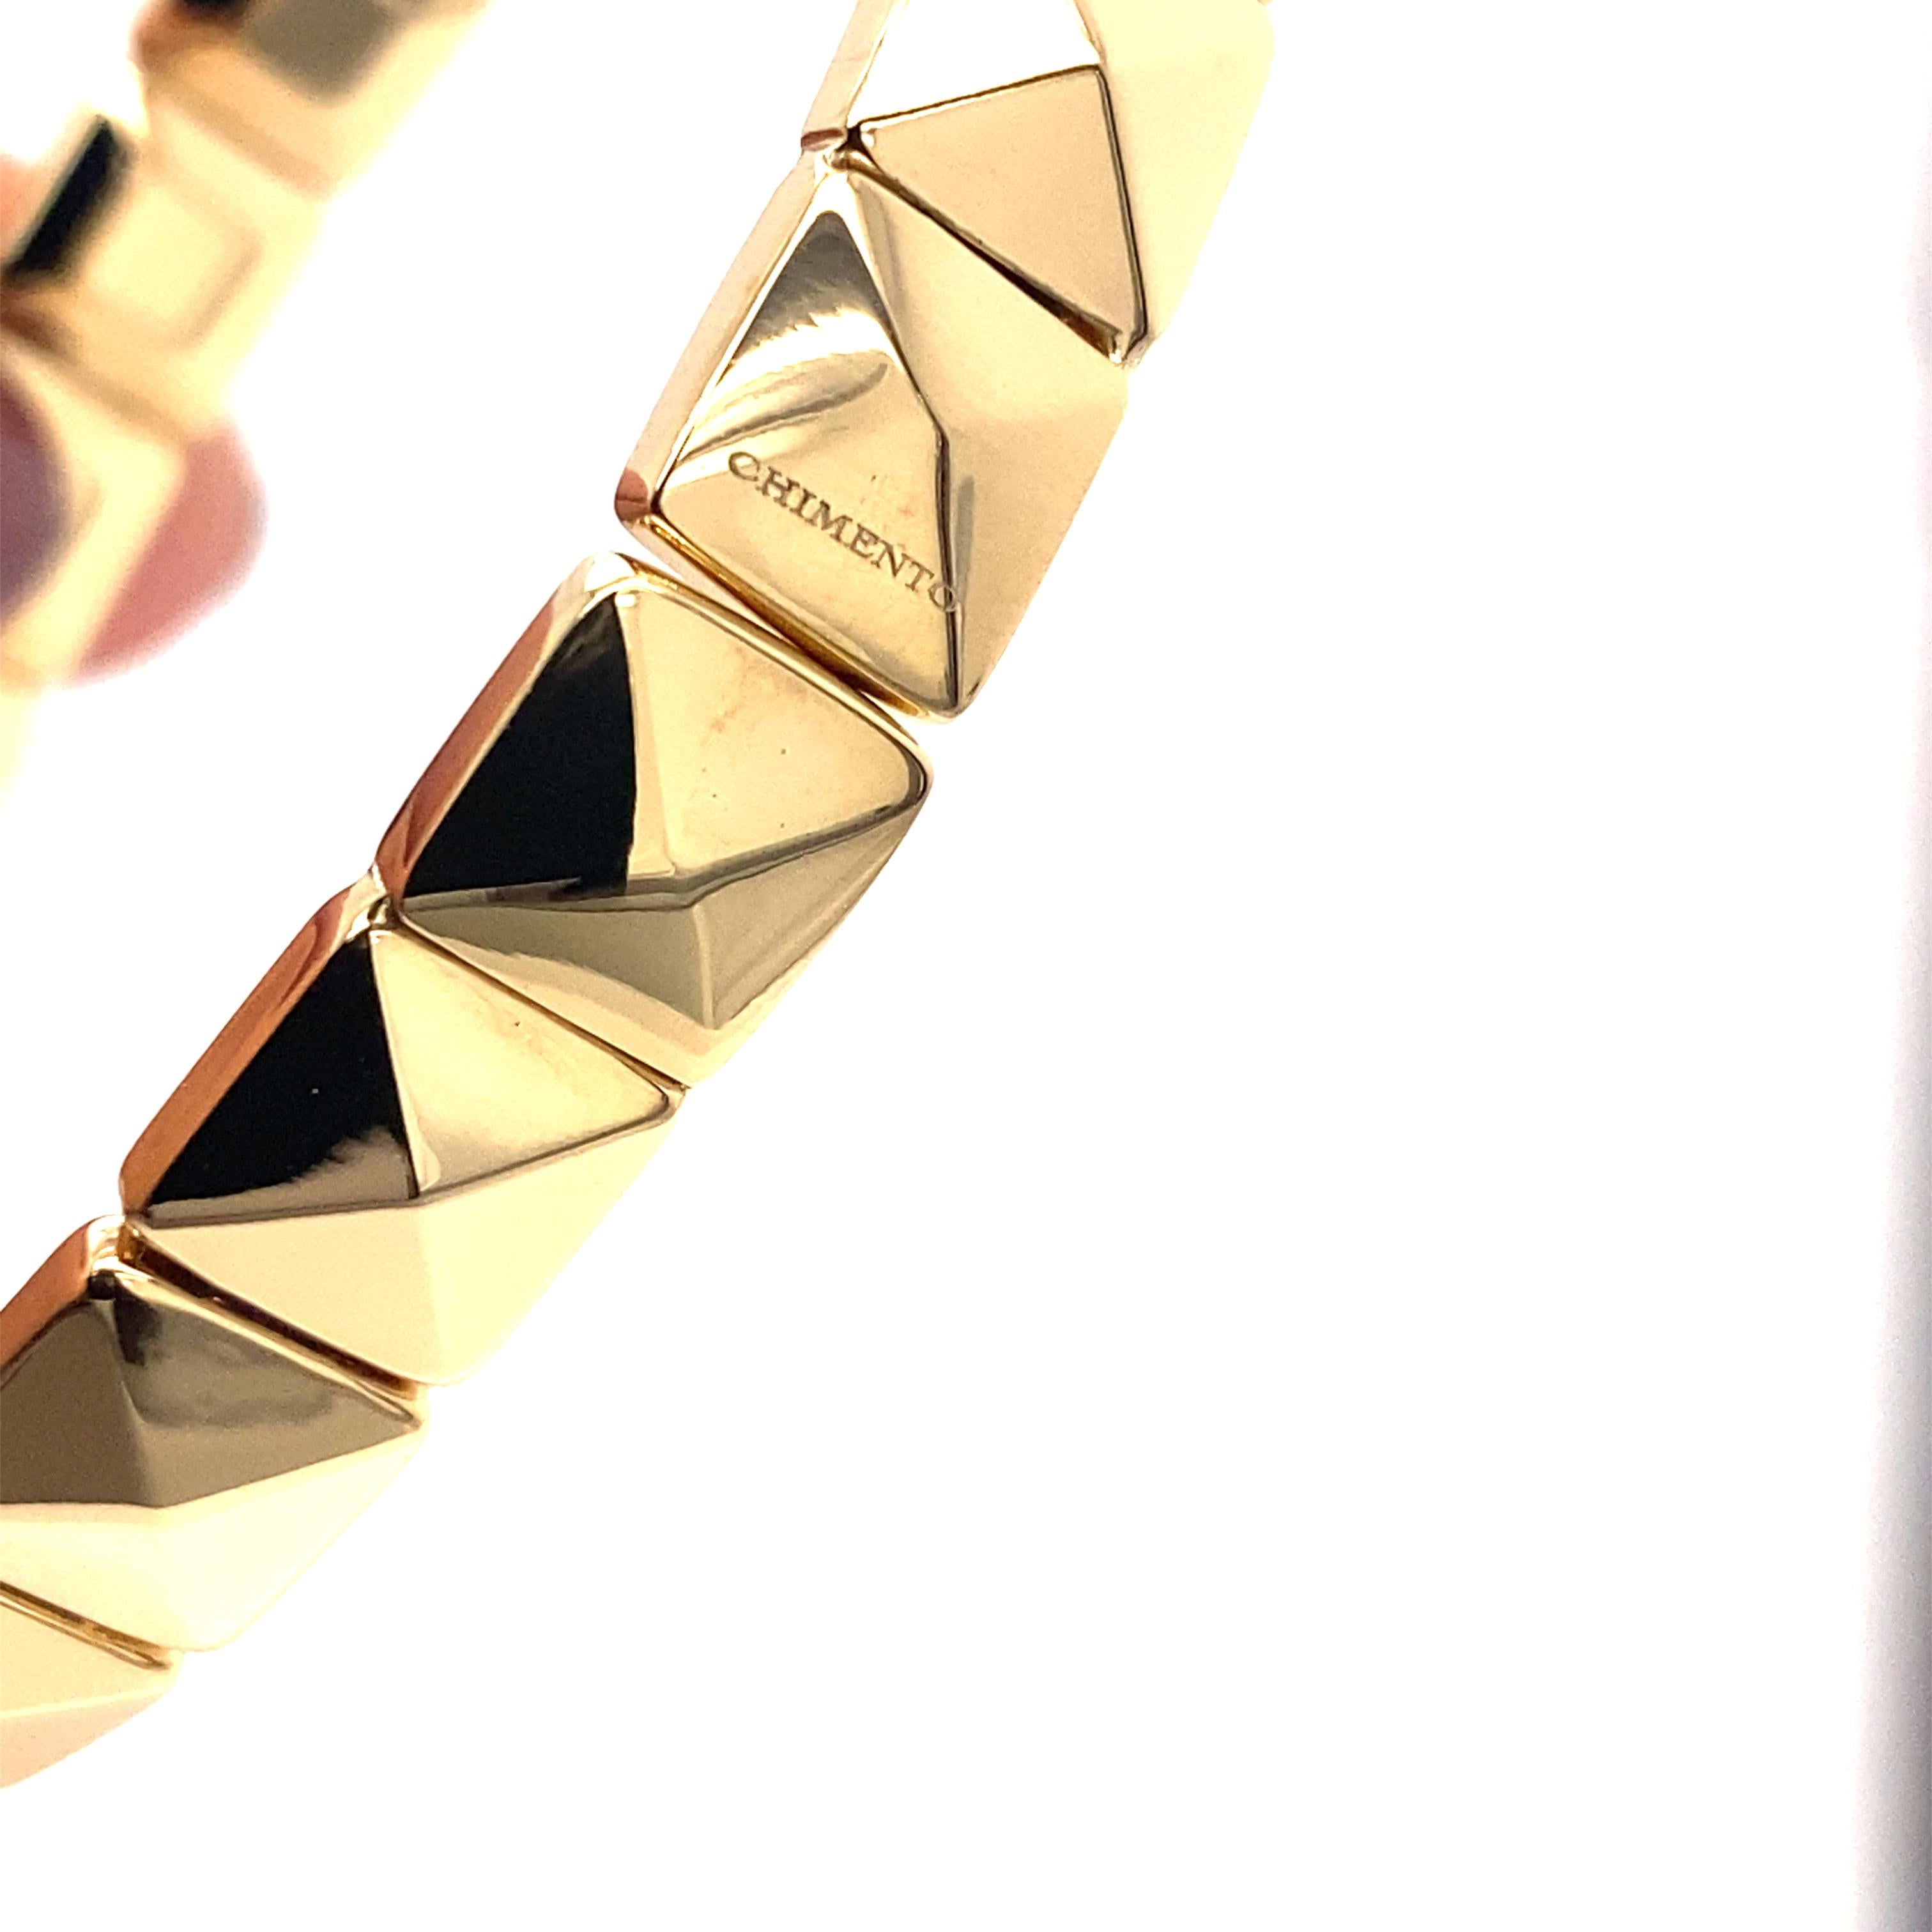 Découvrez l'élégance intemporelle du bracelet moderne Chimento en or jaune 18 carats, un bijou exquis qui allie la splendeur de l'or à un design contemporain et raffiné.

Créé par la célèbre maison de joaillerie Chimento, ce bracelet est un